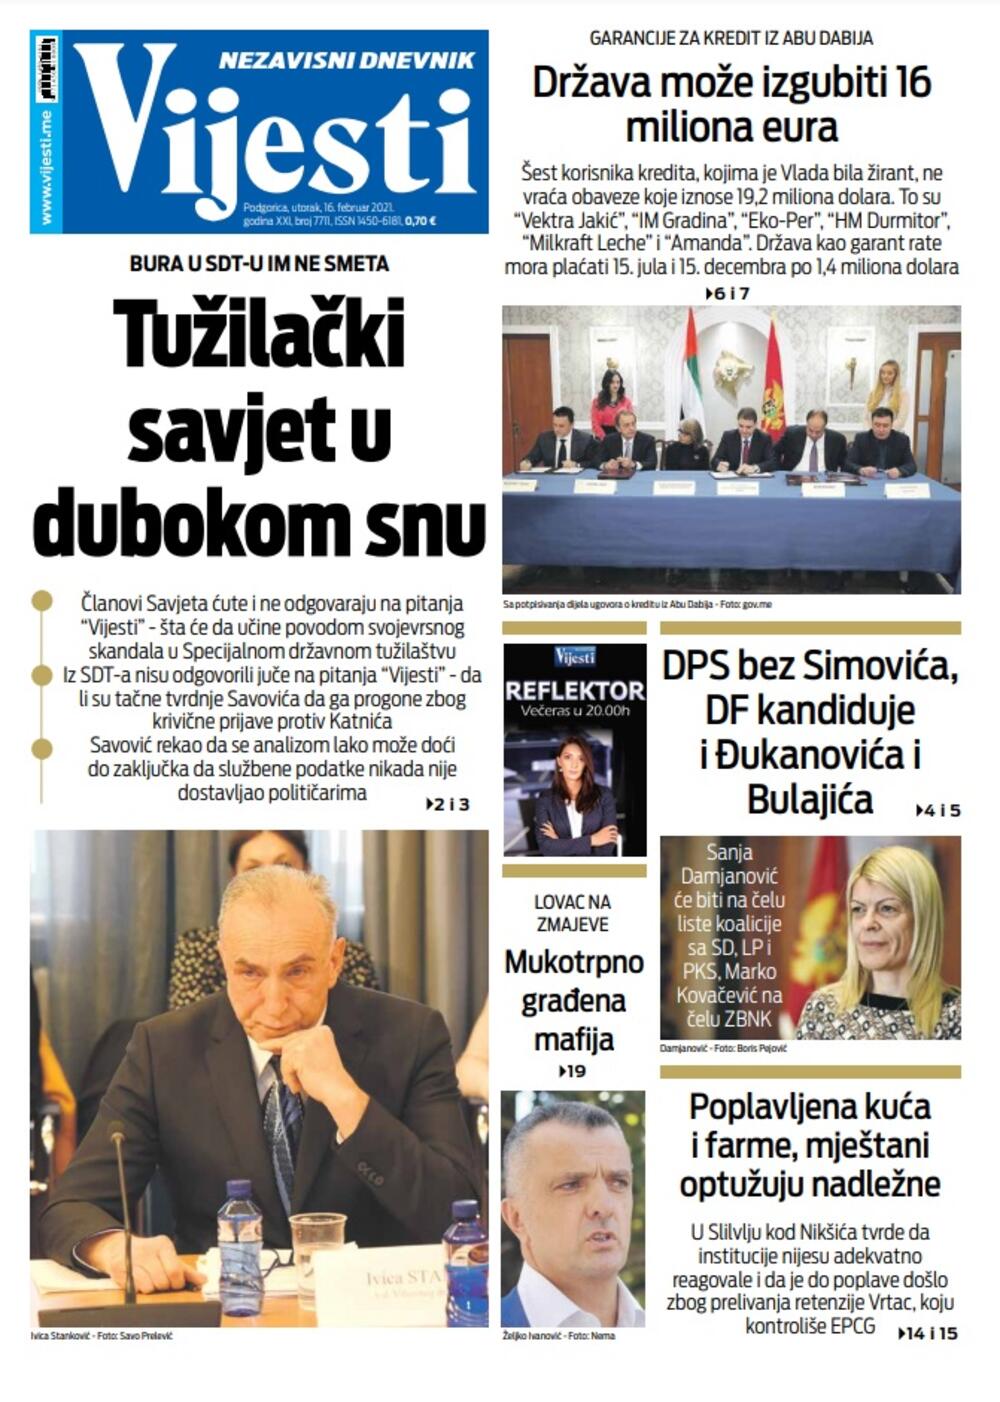 Naslovna strana Vijesti za utorak 16. februar 2021. godine, Foto: Vijesti